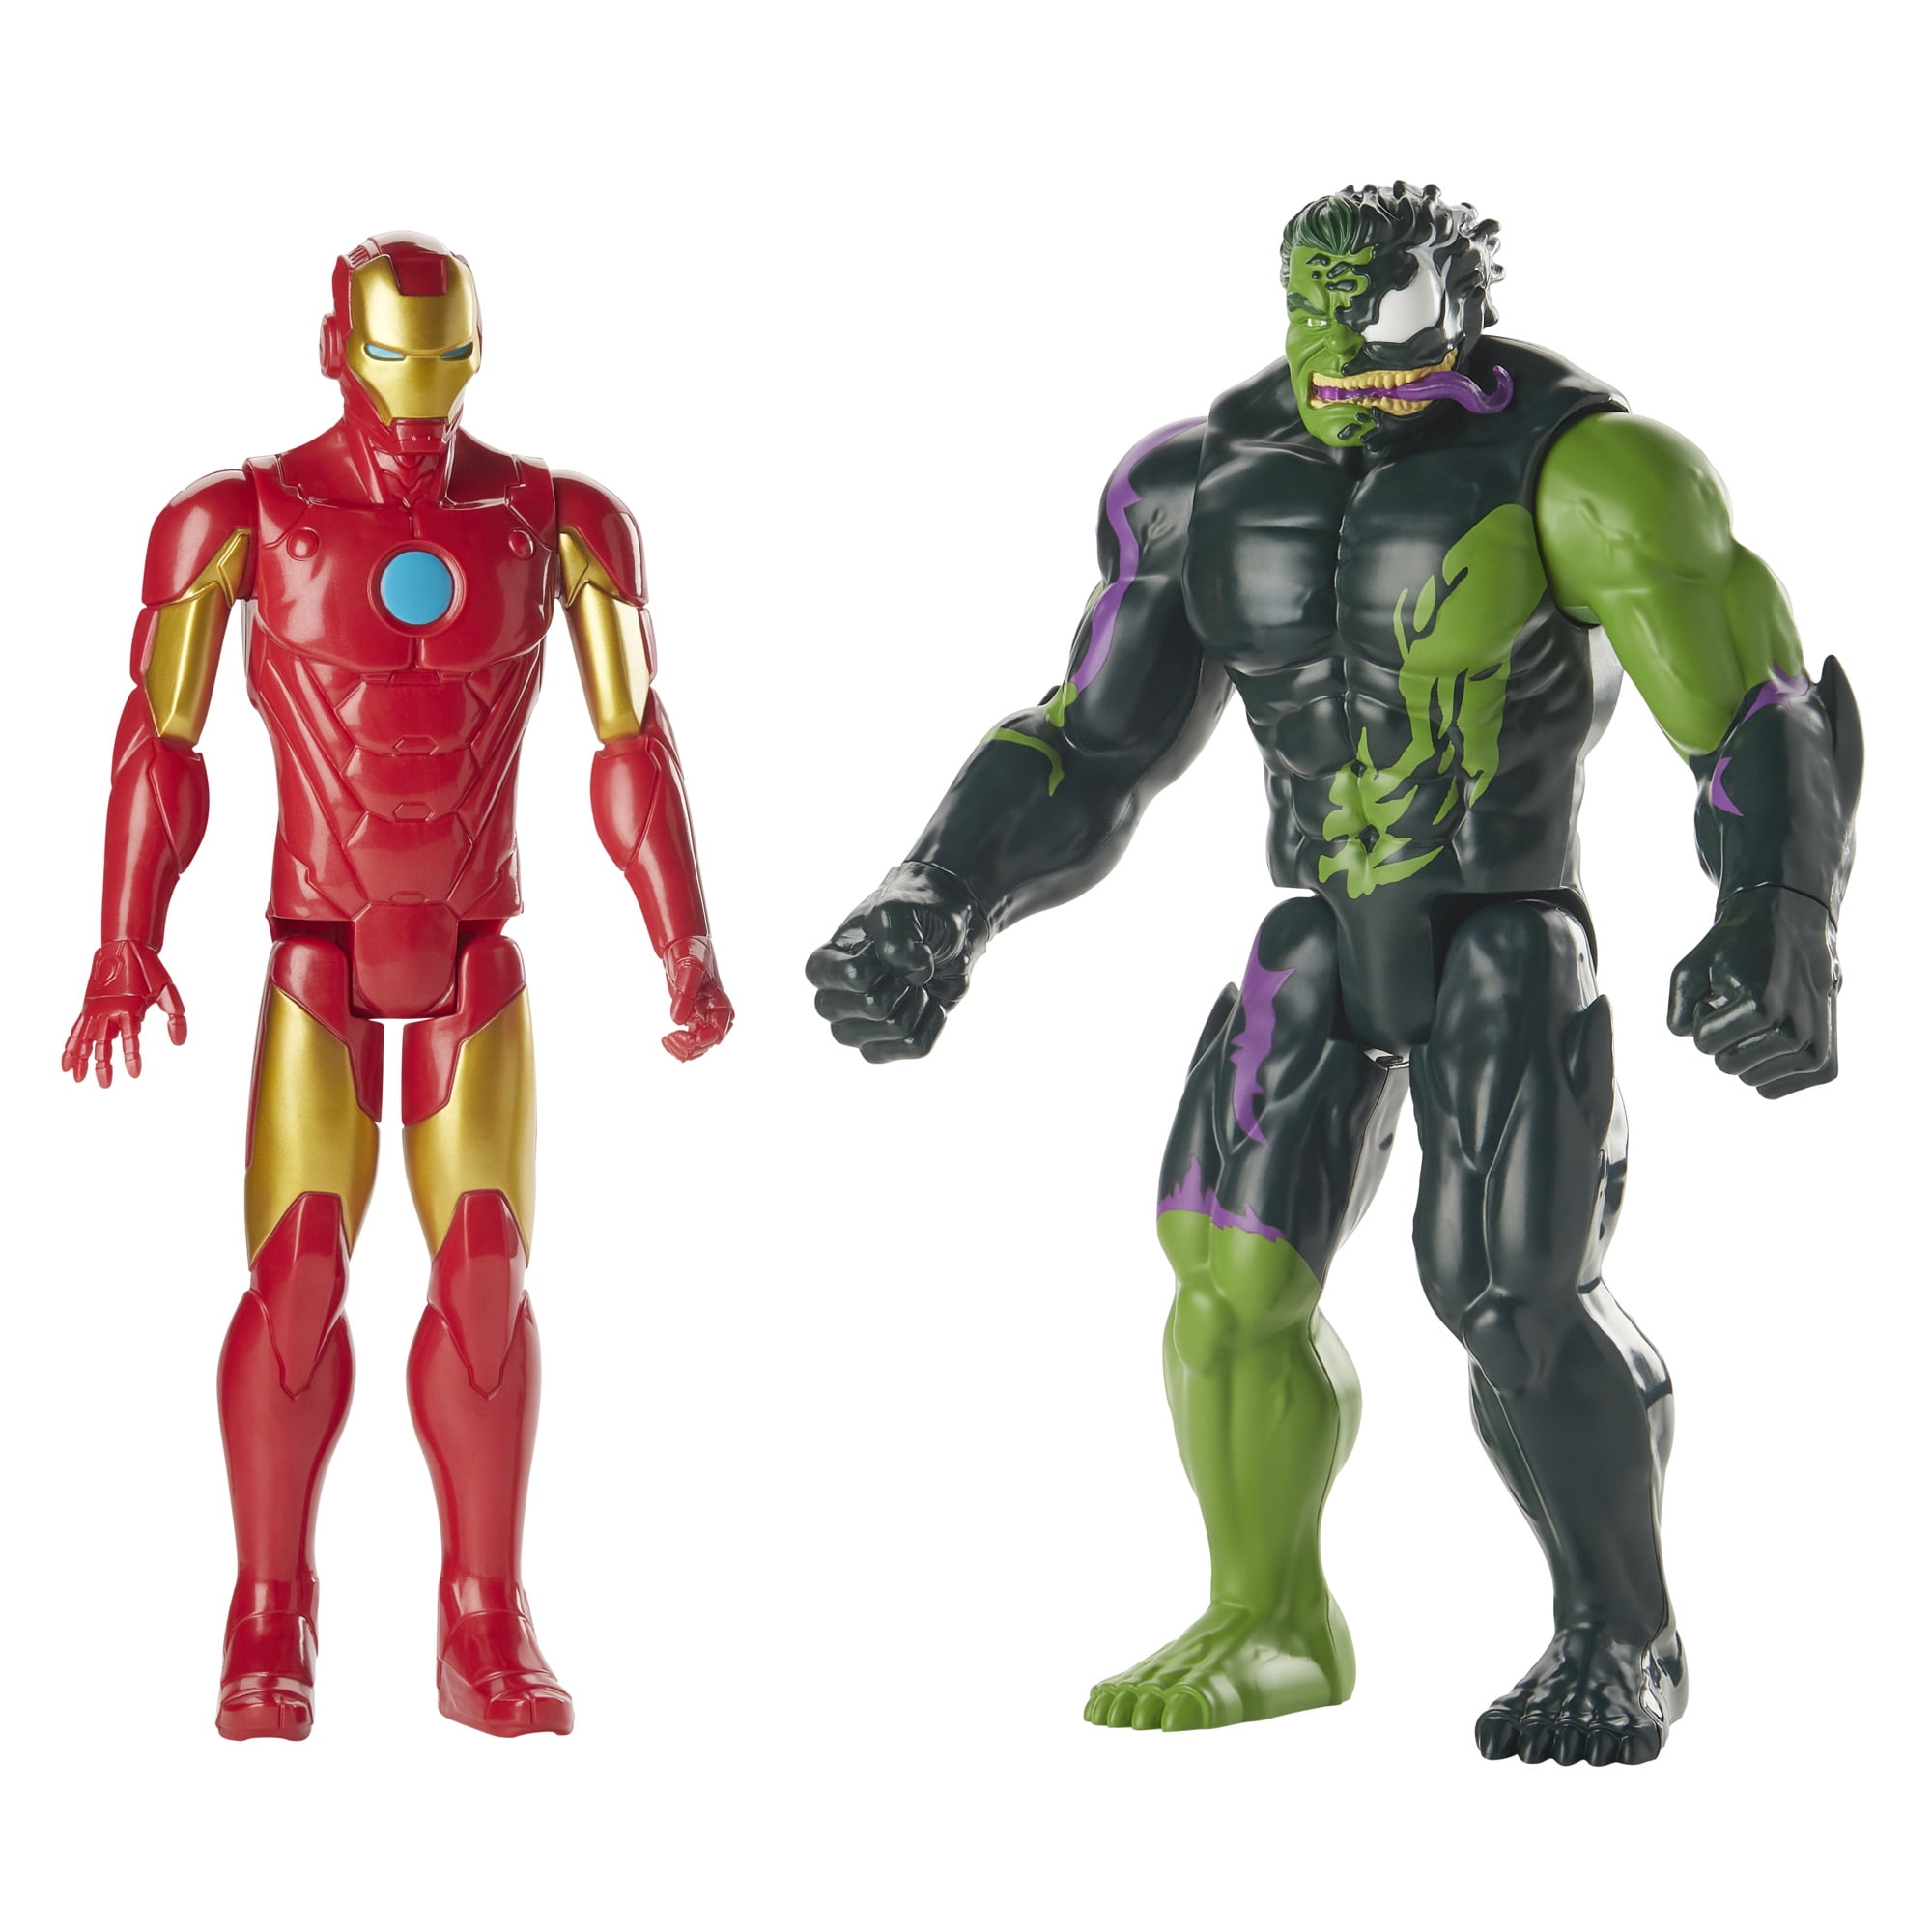 Hasbro Marvel Avengers Titan Hero Series Hulk Action Figure for sale online 